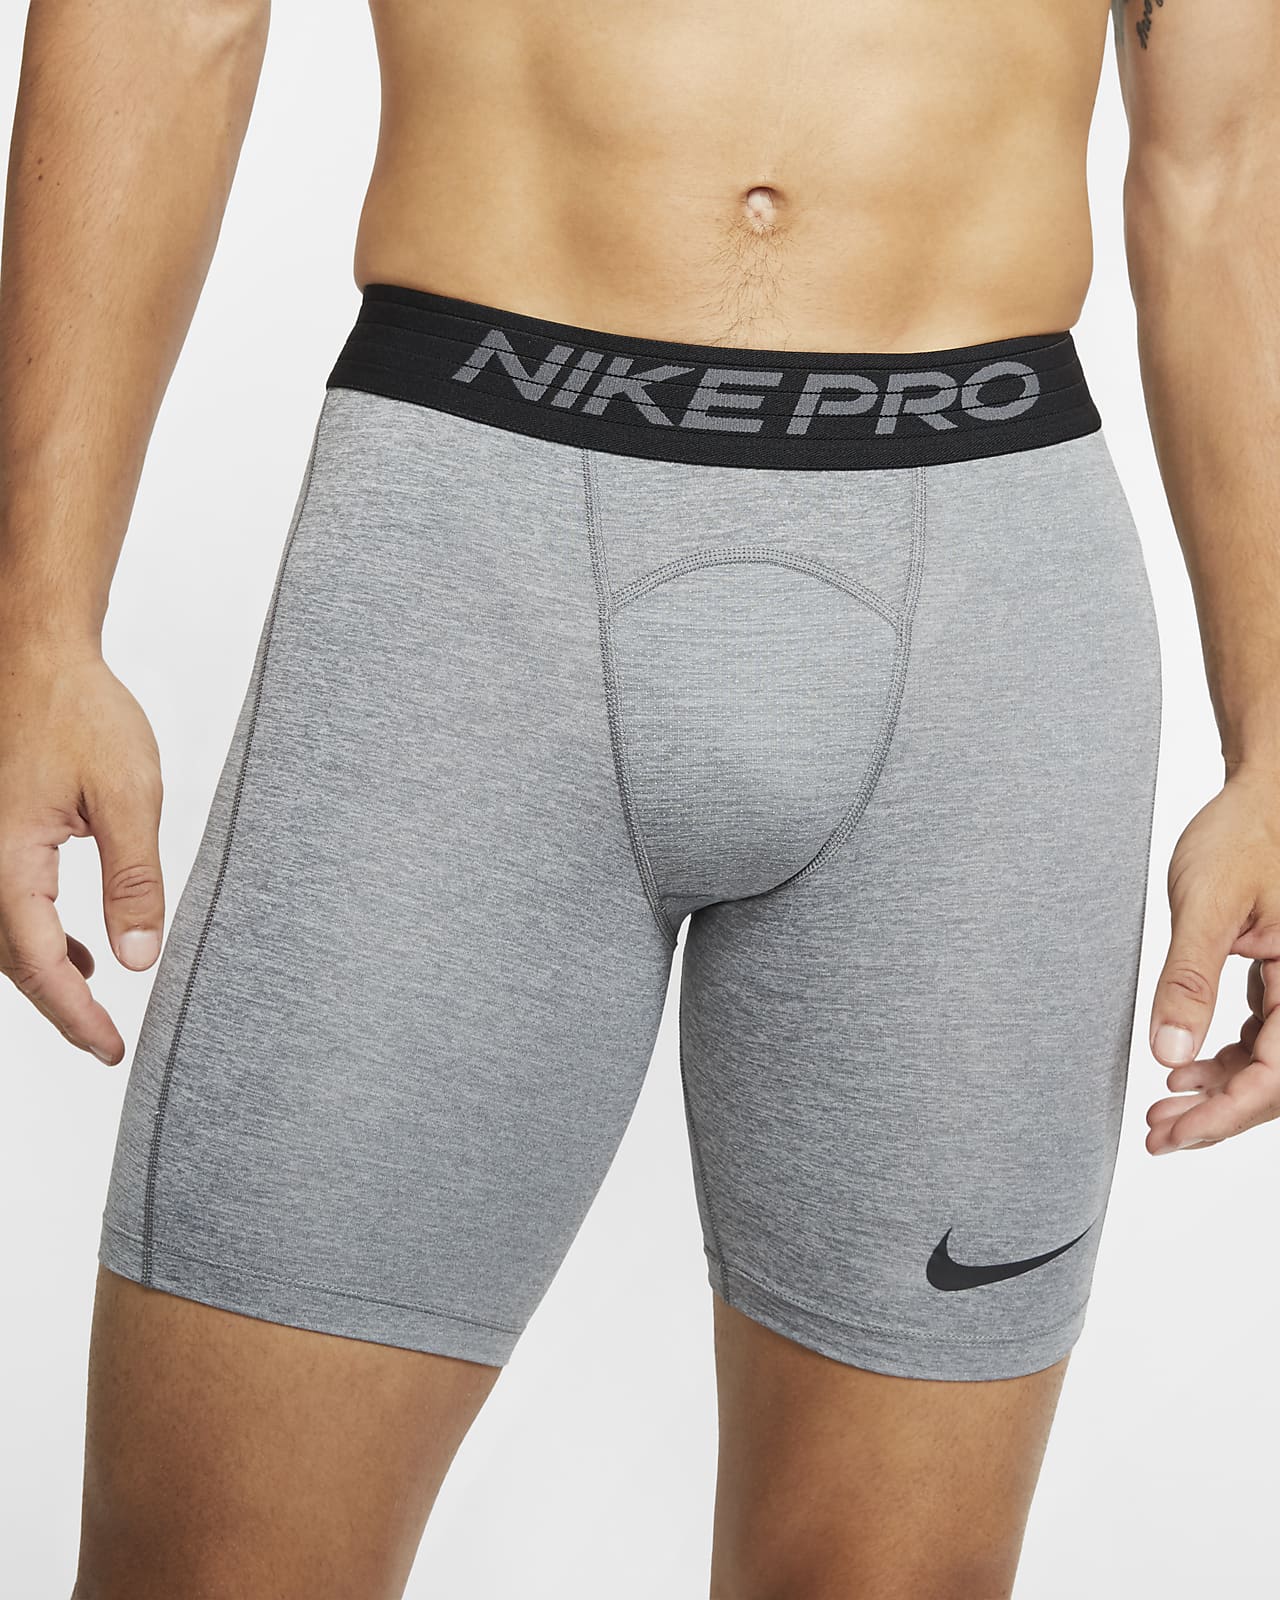 Nike Pro Men's Shorts.